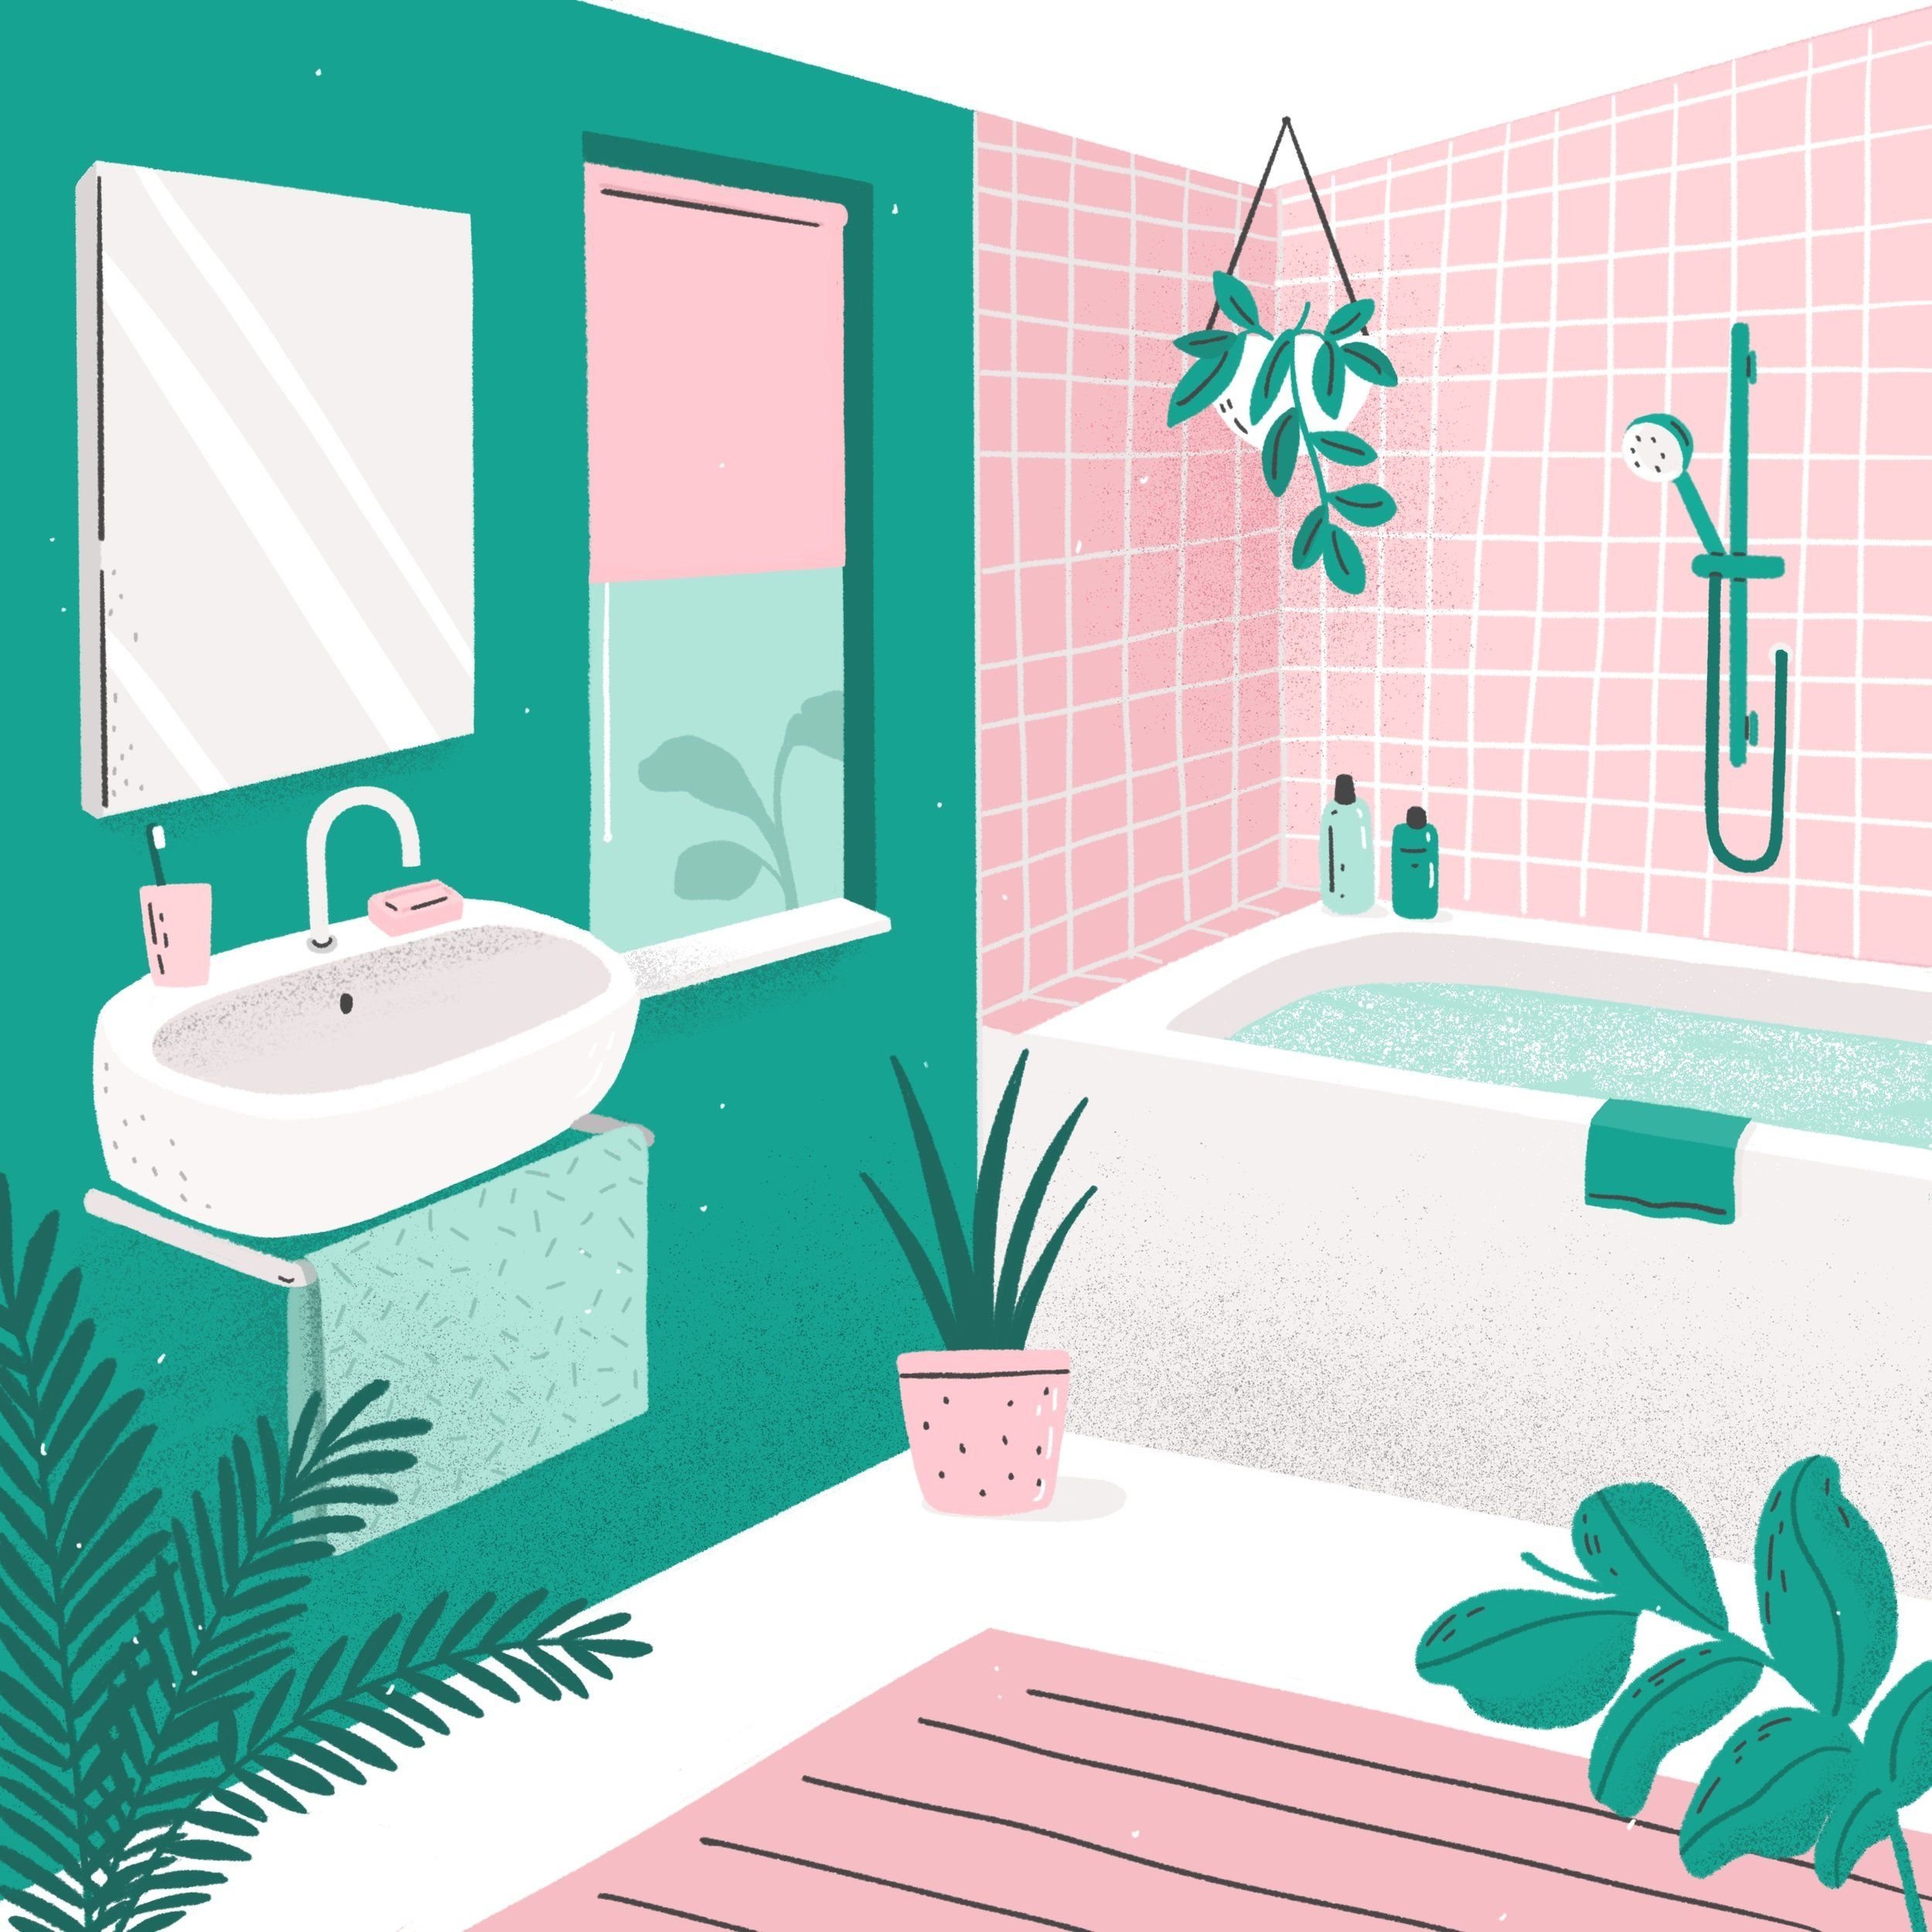 Картинки ванной для детей. Ванная комната мультяшная. Ванная комната для детей. Ванная иллюстрация. Ванная комната в мультяшном стиле.